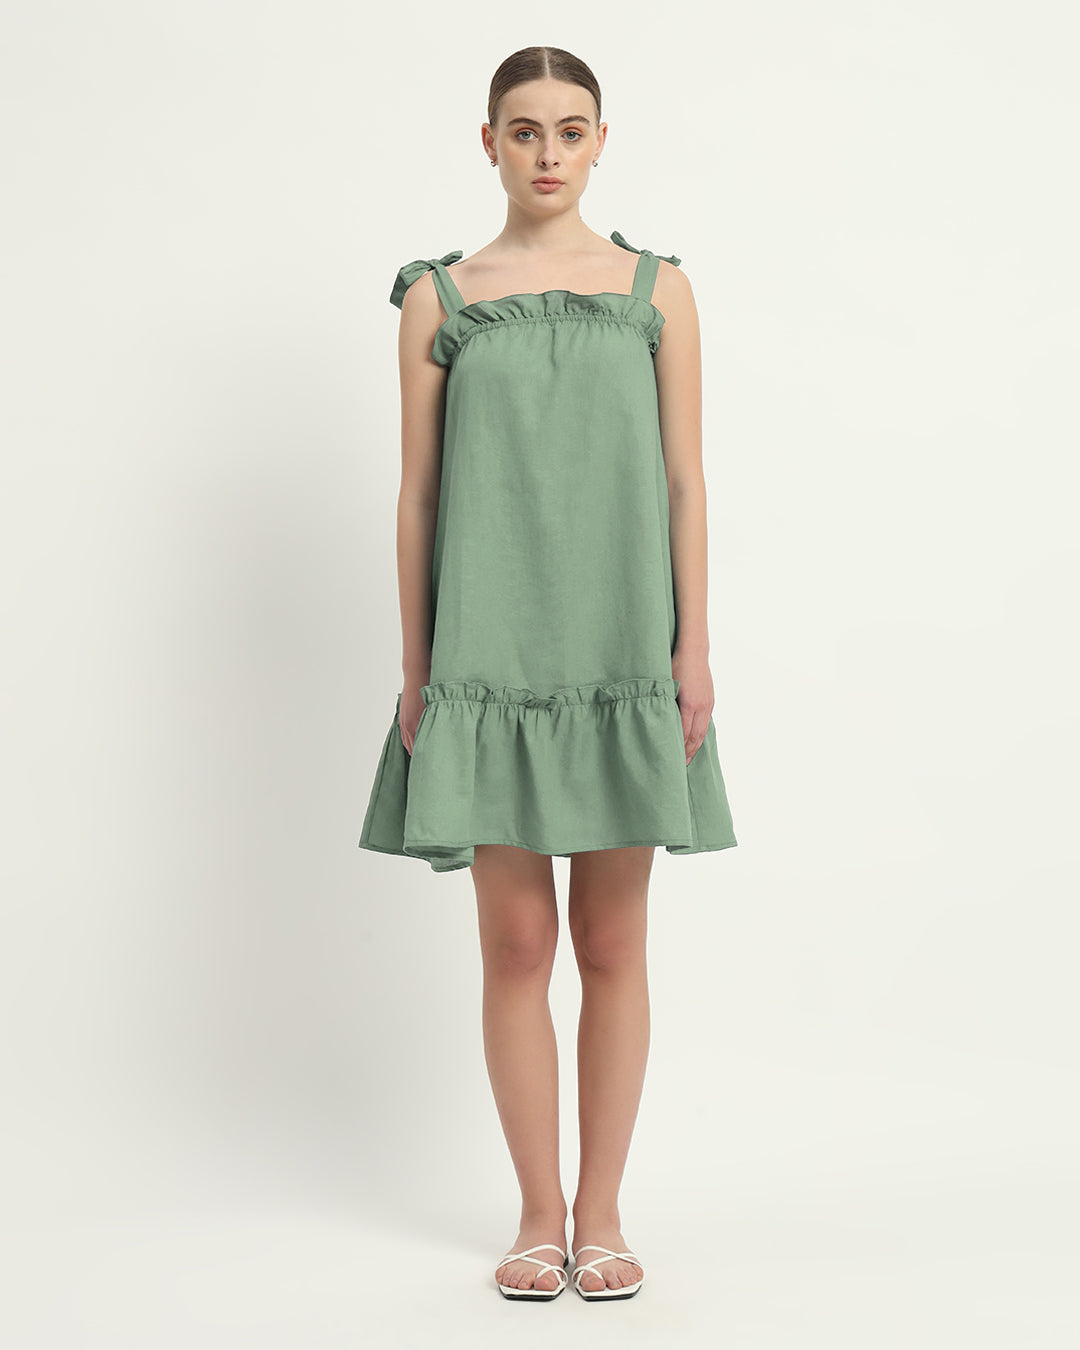 The Amalfi Mint Cotton Dress